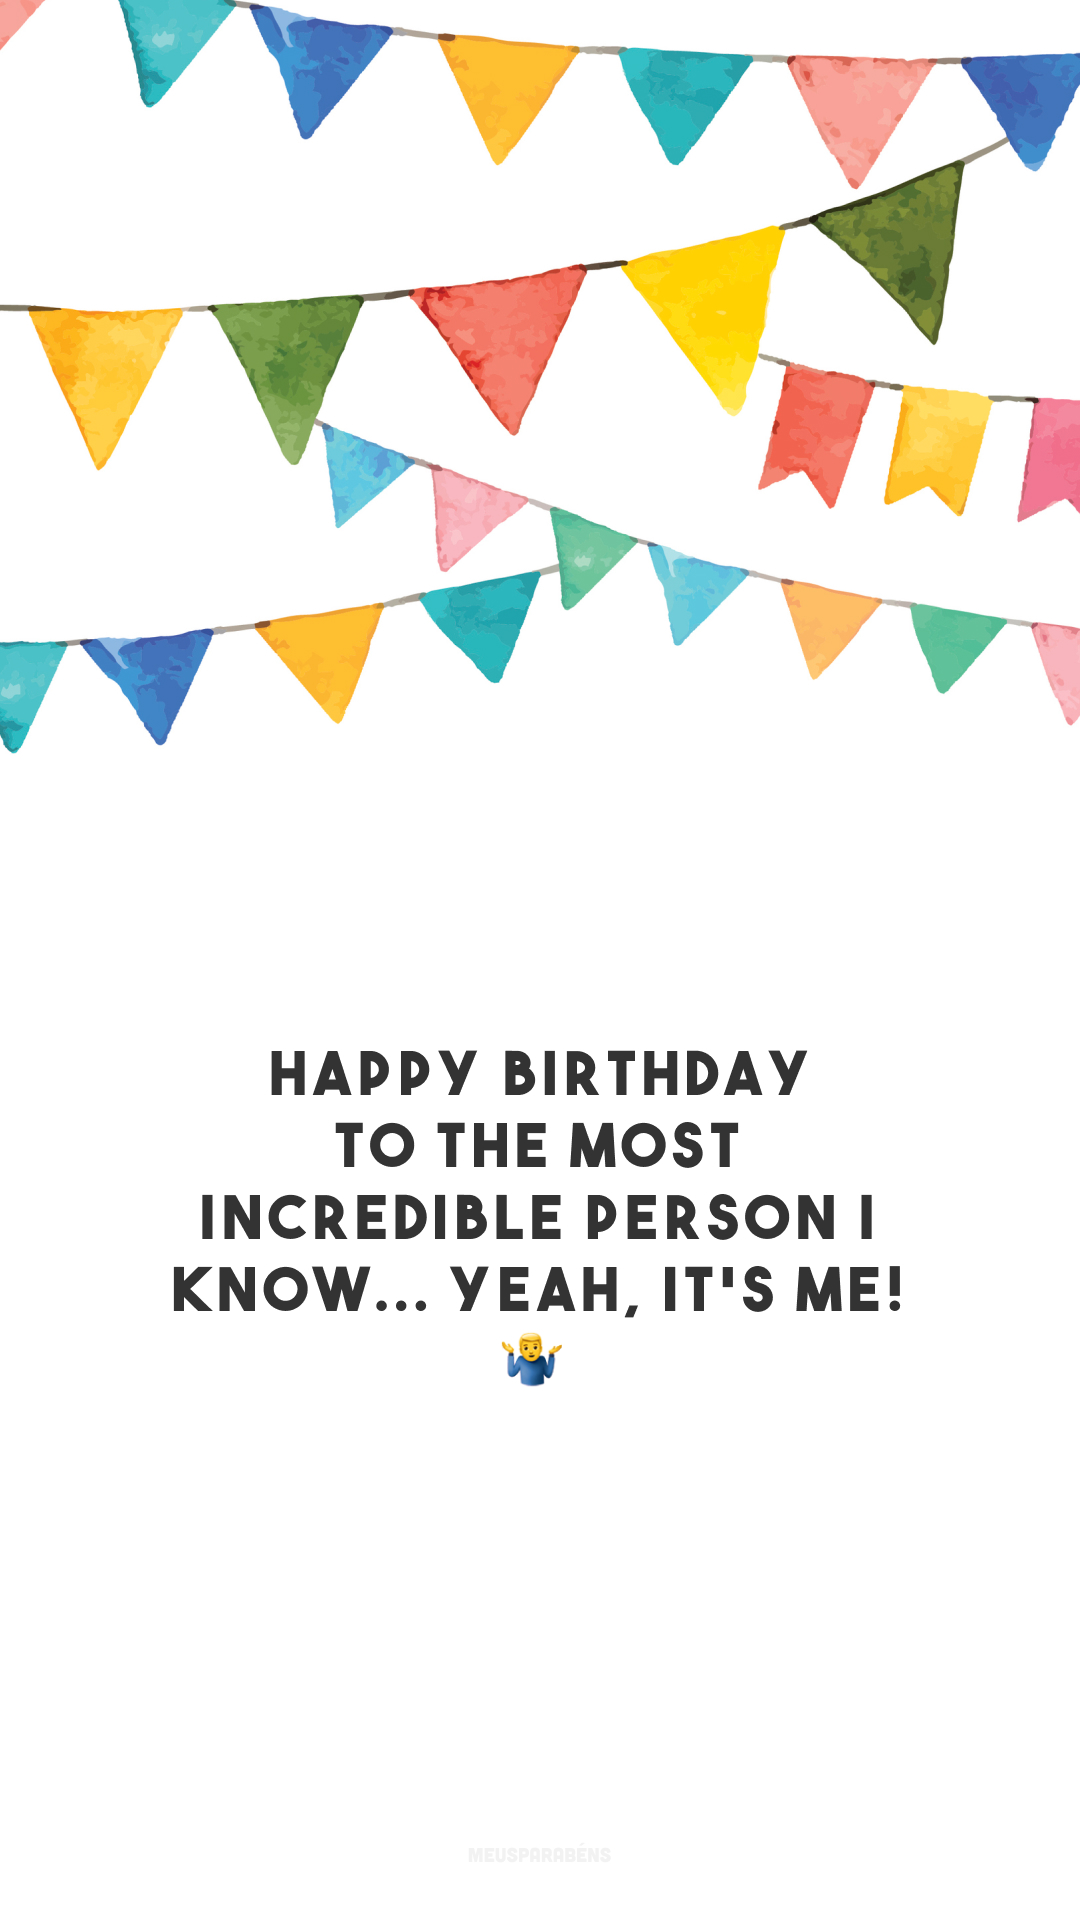 Happy birthday to the most incredible person I know... Yeah, it's me! 🤷‍♂️

<p>(Feliz aniversário para a pessoa mais incrível que eu conheço... Sim, sou eu!)<p>